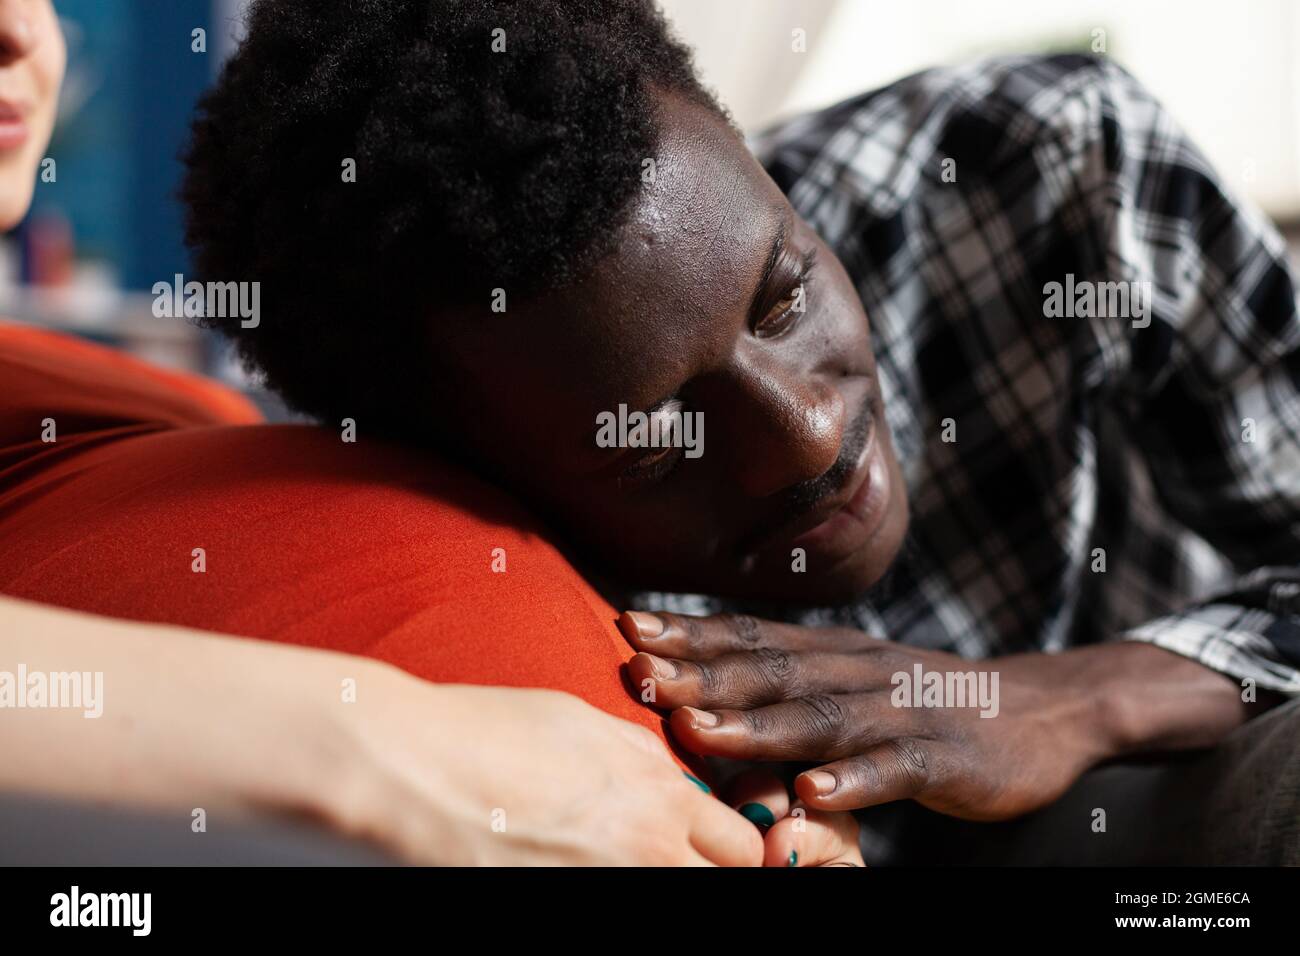 Primo piano di uomo nero che mette la testa sul ventre della donna incinta. Uomo afroamericano che tiene la mano e tocca il baby bump sorridendo. Coppia interrazziale con gravidanza attesa bambino. Foto Stock